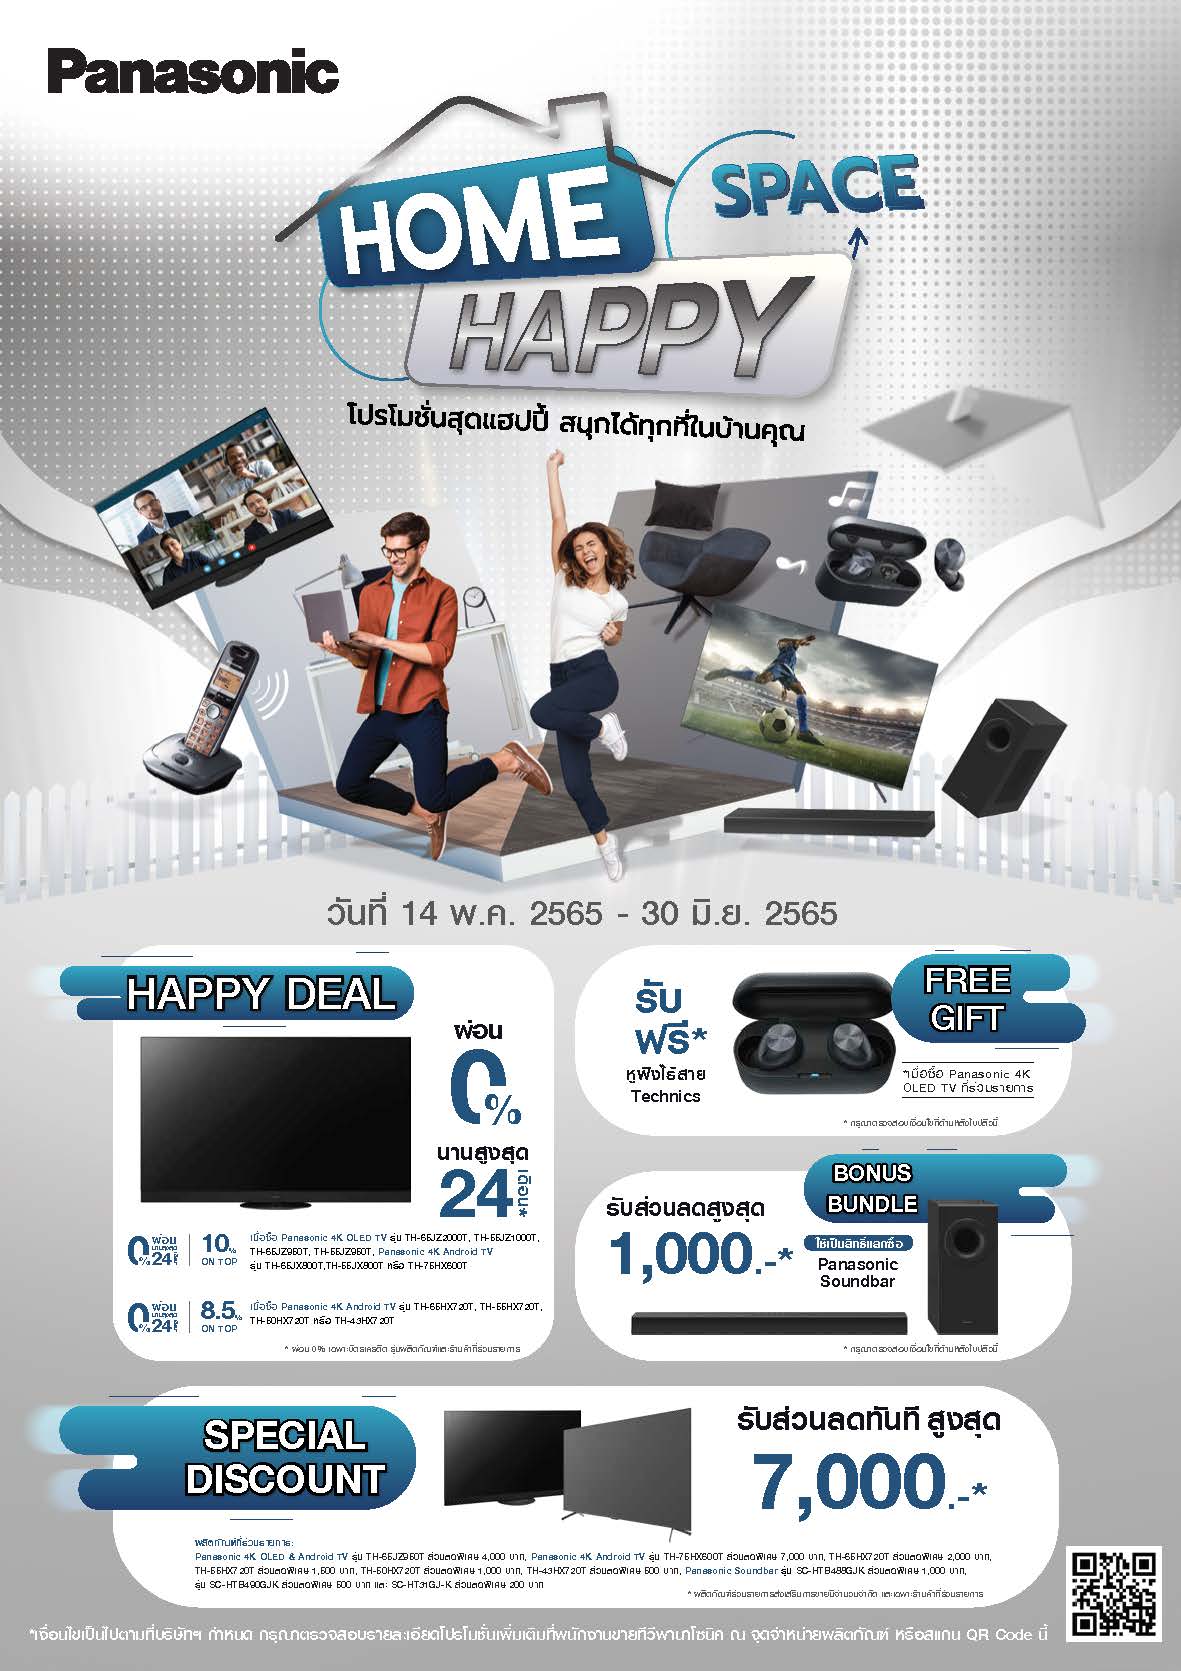 ข่าวโปรโมชั่น - Panasonic Home Happy Space โปรโมชั่นสุดแฮปปี้ สนุกได้ทุกที่ในบ้านคุณ